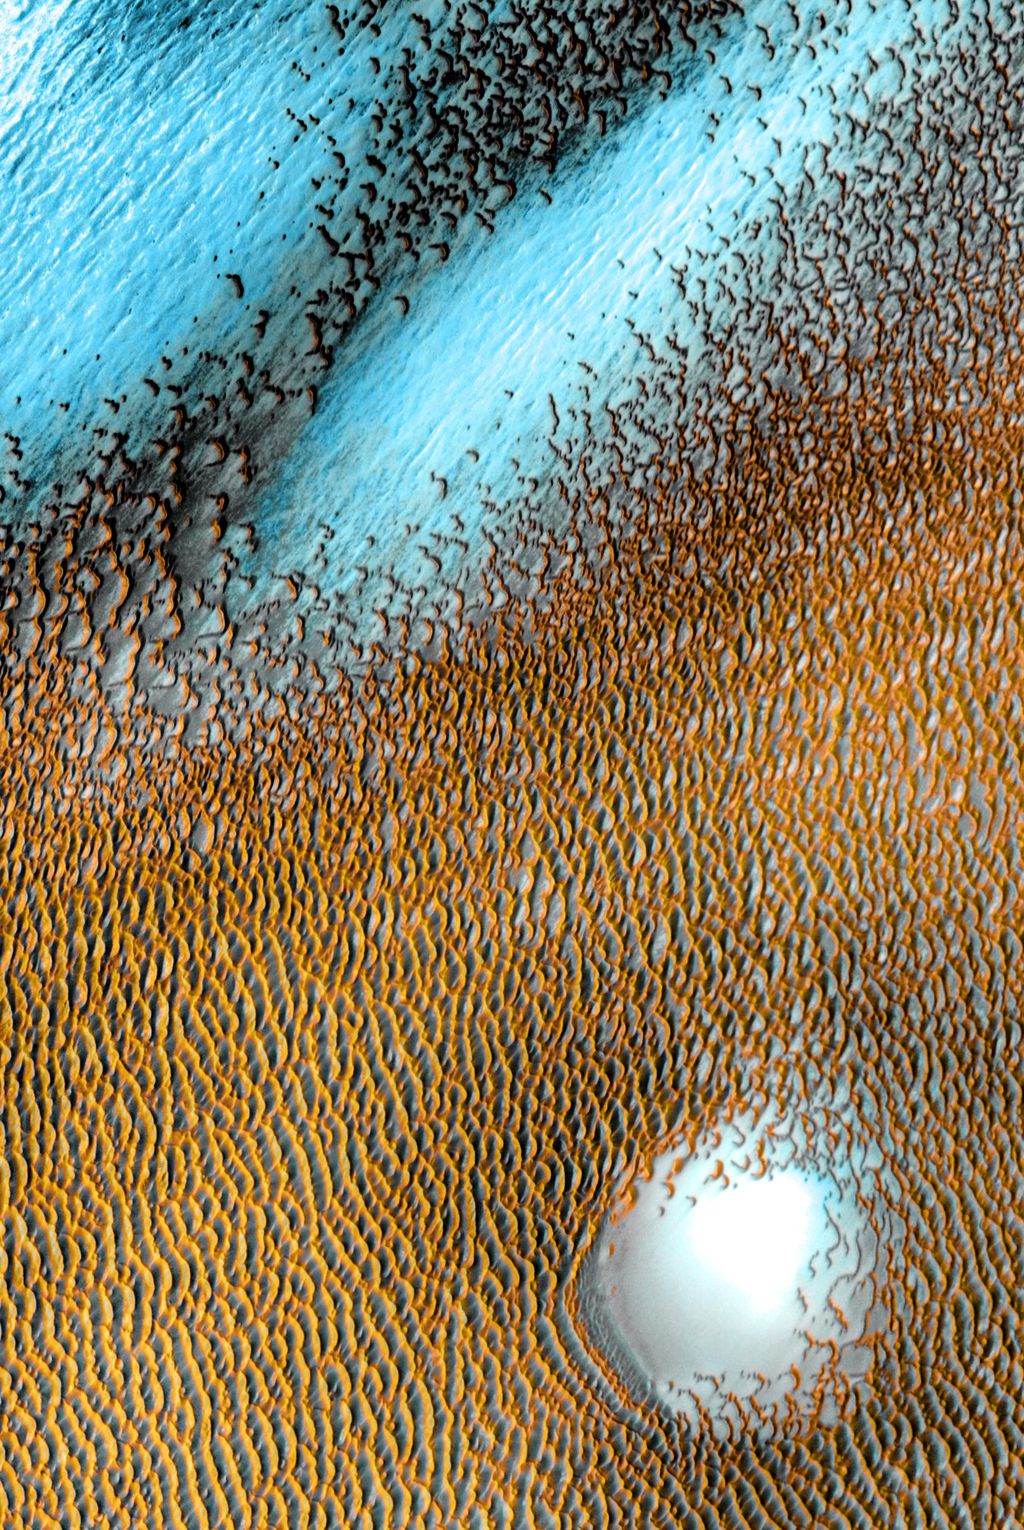 As partes mais quentes da dunas receberam tons amarelados, enquanto as mais frias são azuis (Imagem: Reprodução/NASA/JPL-Caltech/ASU)